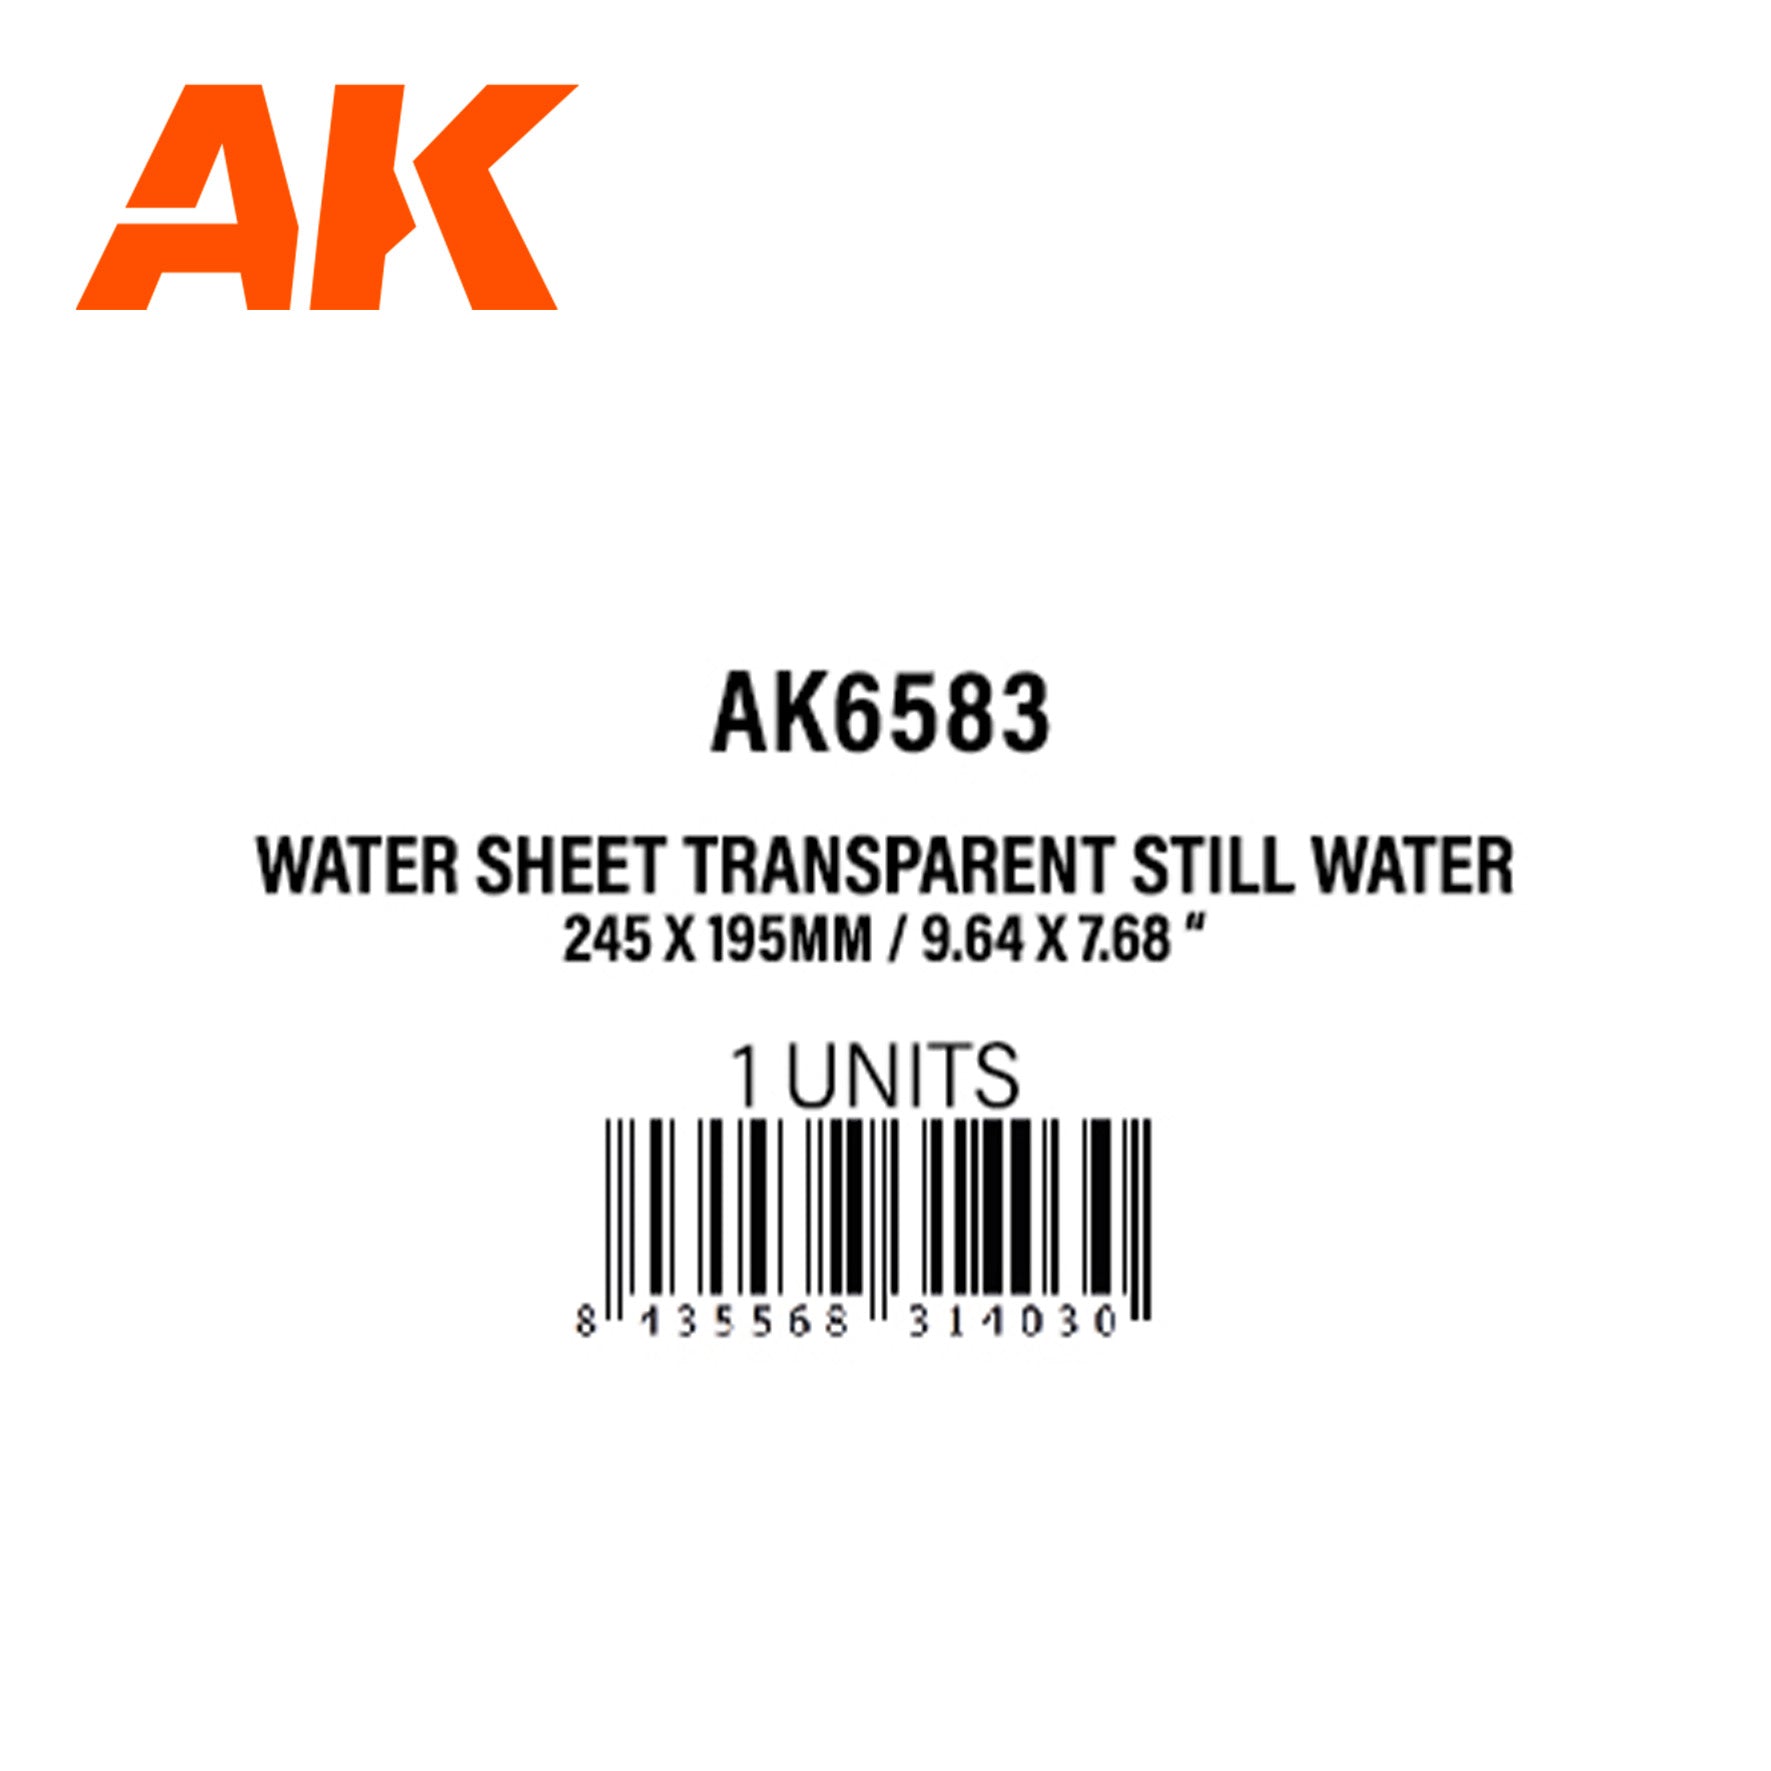 AK6583 - Water Sheet Transparent STILL WATER - 245 x 195mm